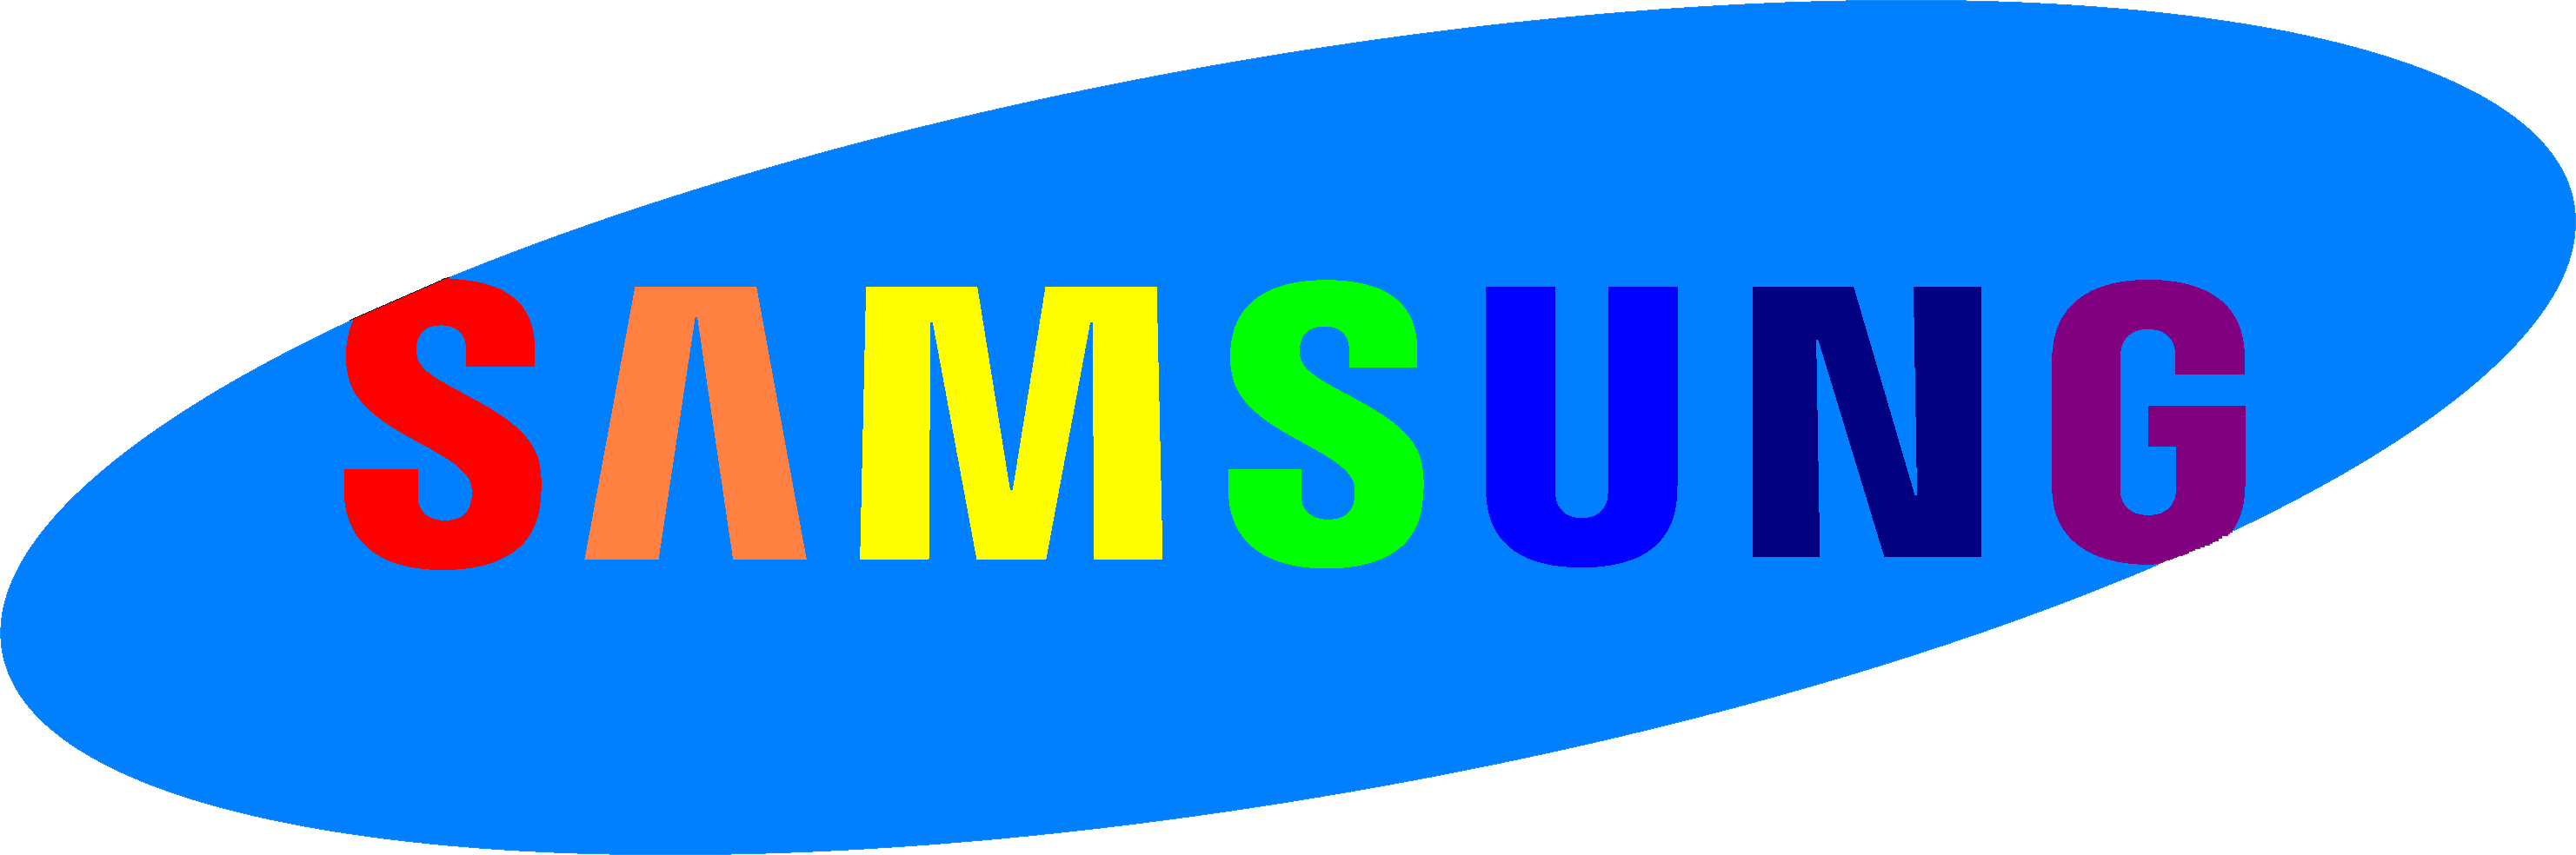 Samsung Mobile Logo - Samsung Mobile Logo Png Images